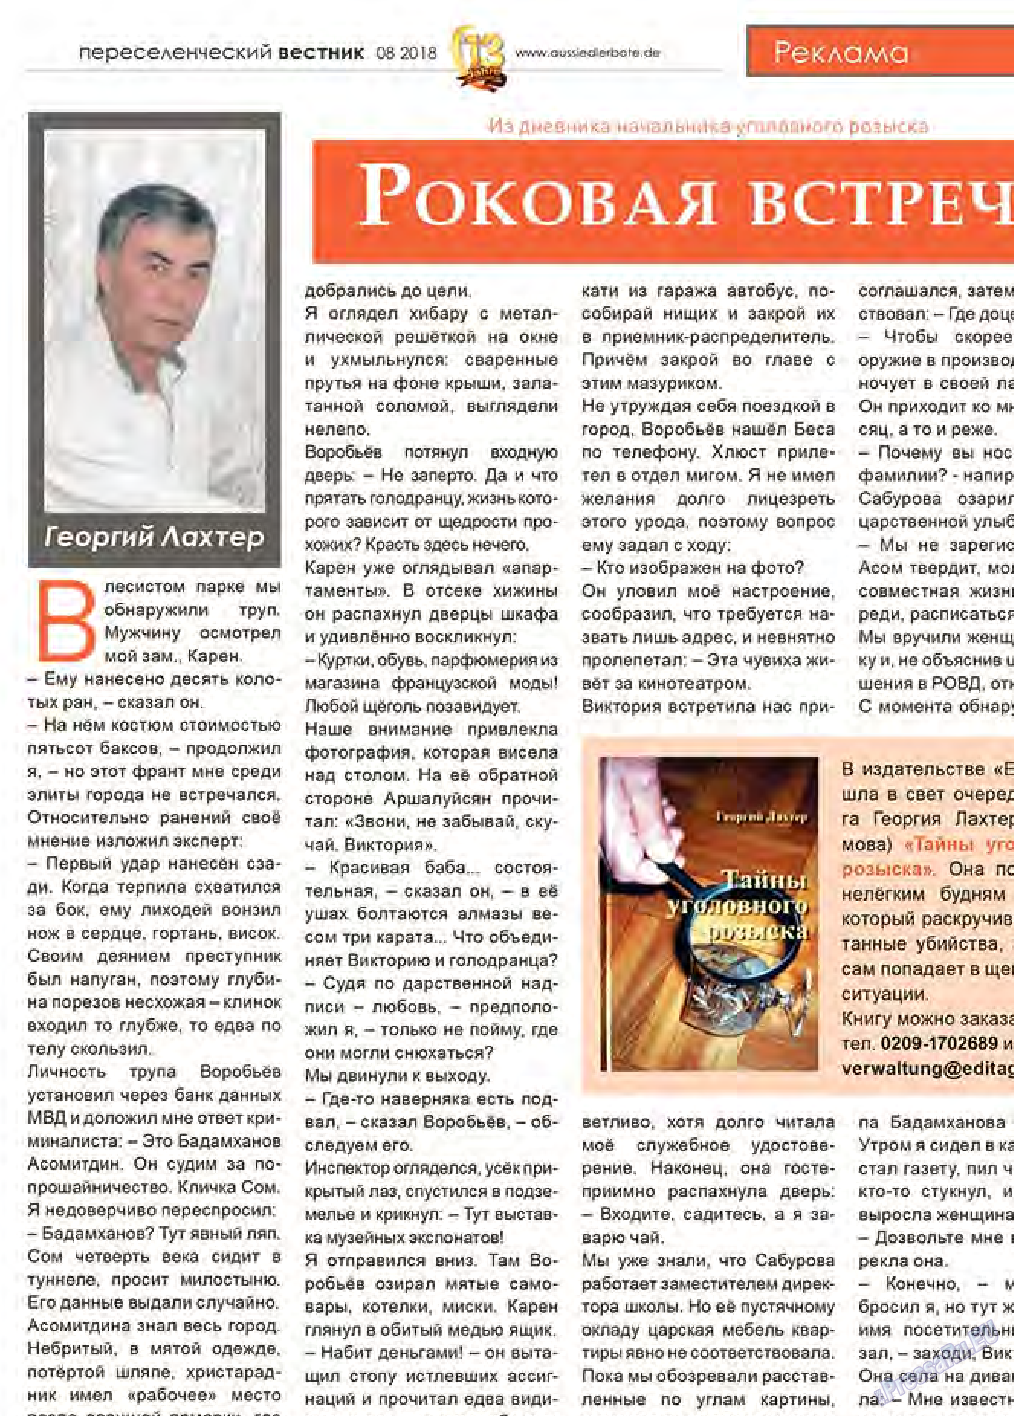 Переселенческий вестник, газета. 2018 №8 стр.29